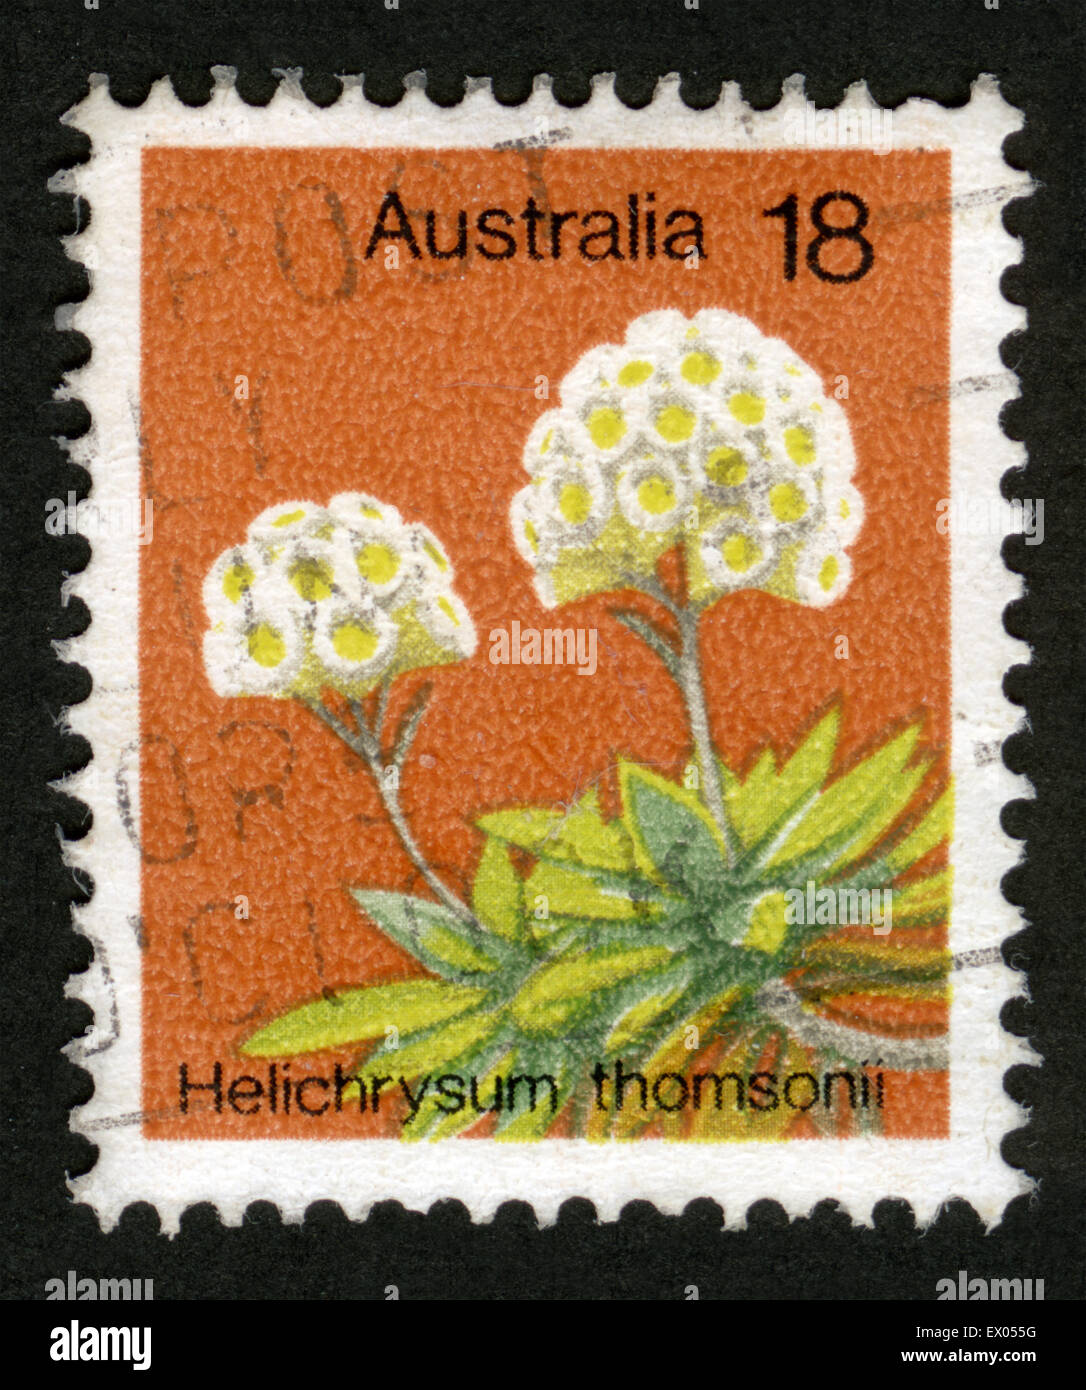 L'Australie, thamsonii,fleurs,Helichrysum timbre Banque D'Images